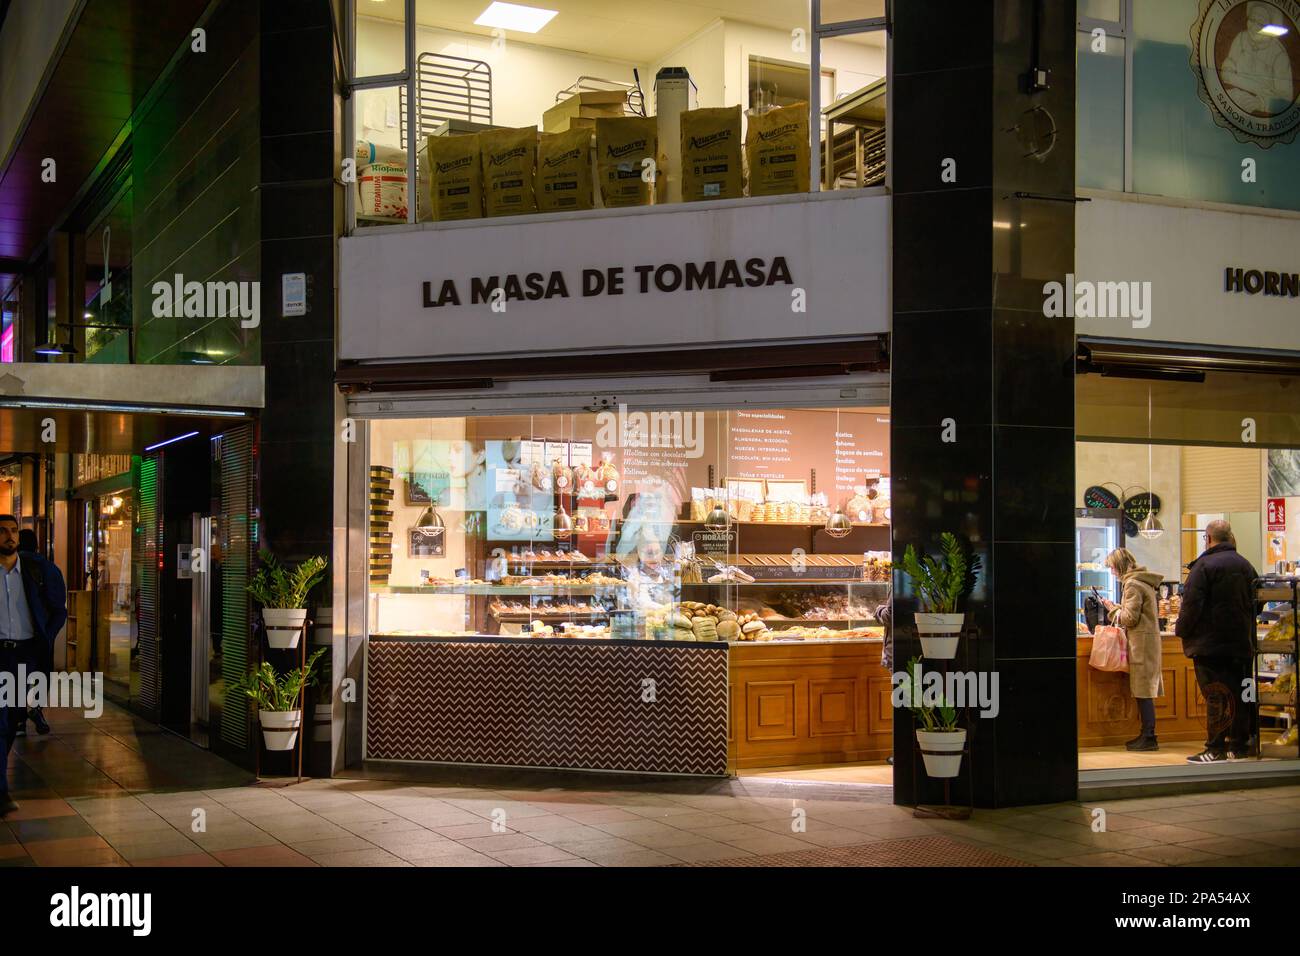 Les gens achètent du pain dans une entreprise de franchise appelée la Masa de TomasaScene d'Alicante ville de nuit en Espagne. Banque D'Images